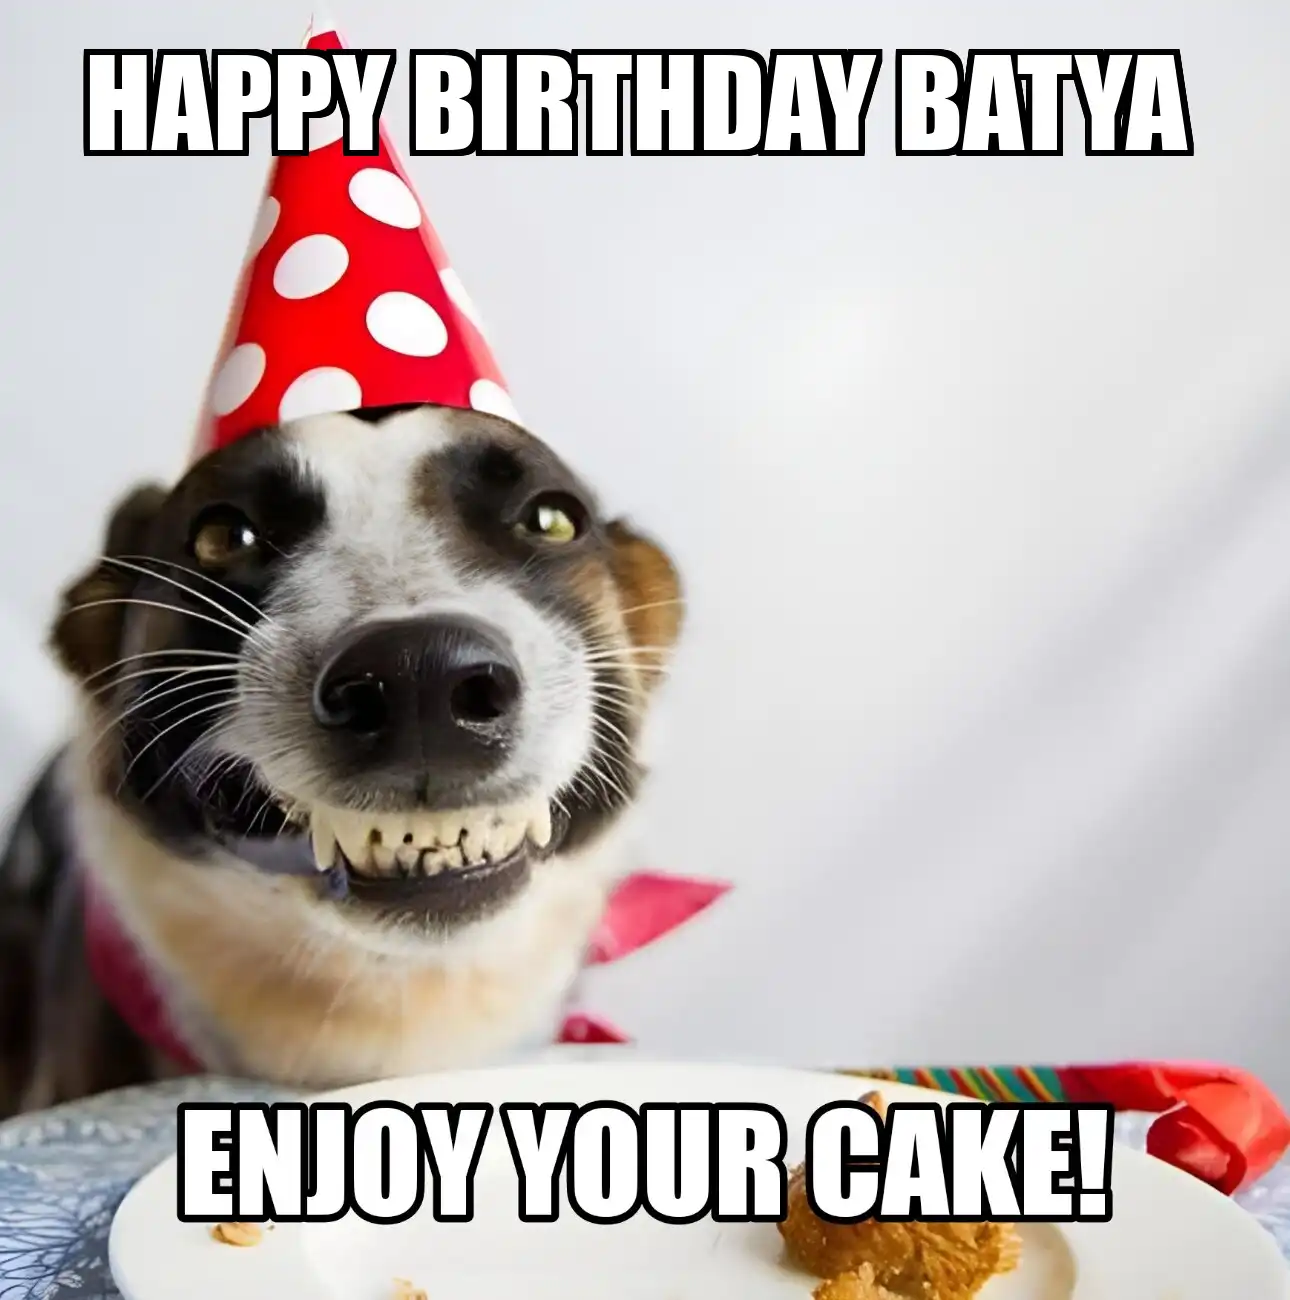 Happy Birthday Batya Enjoy Your Cake Dog Meme